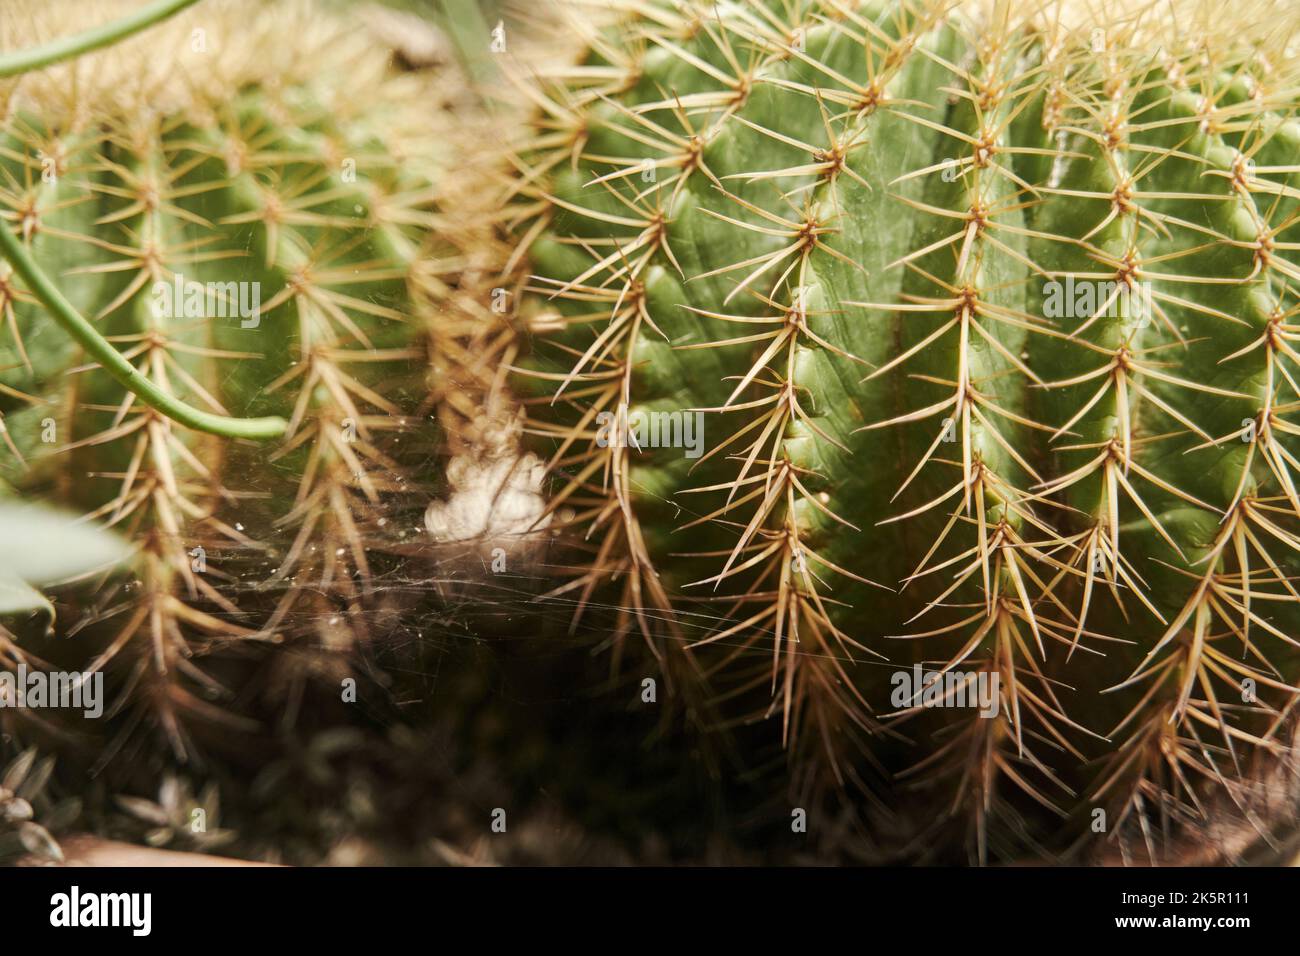 Primo piano di cactus rotondi e pungente. Una pianta verde succulenta con spine gialle affilate Foto Stock